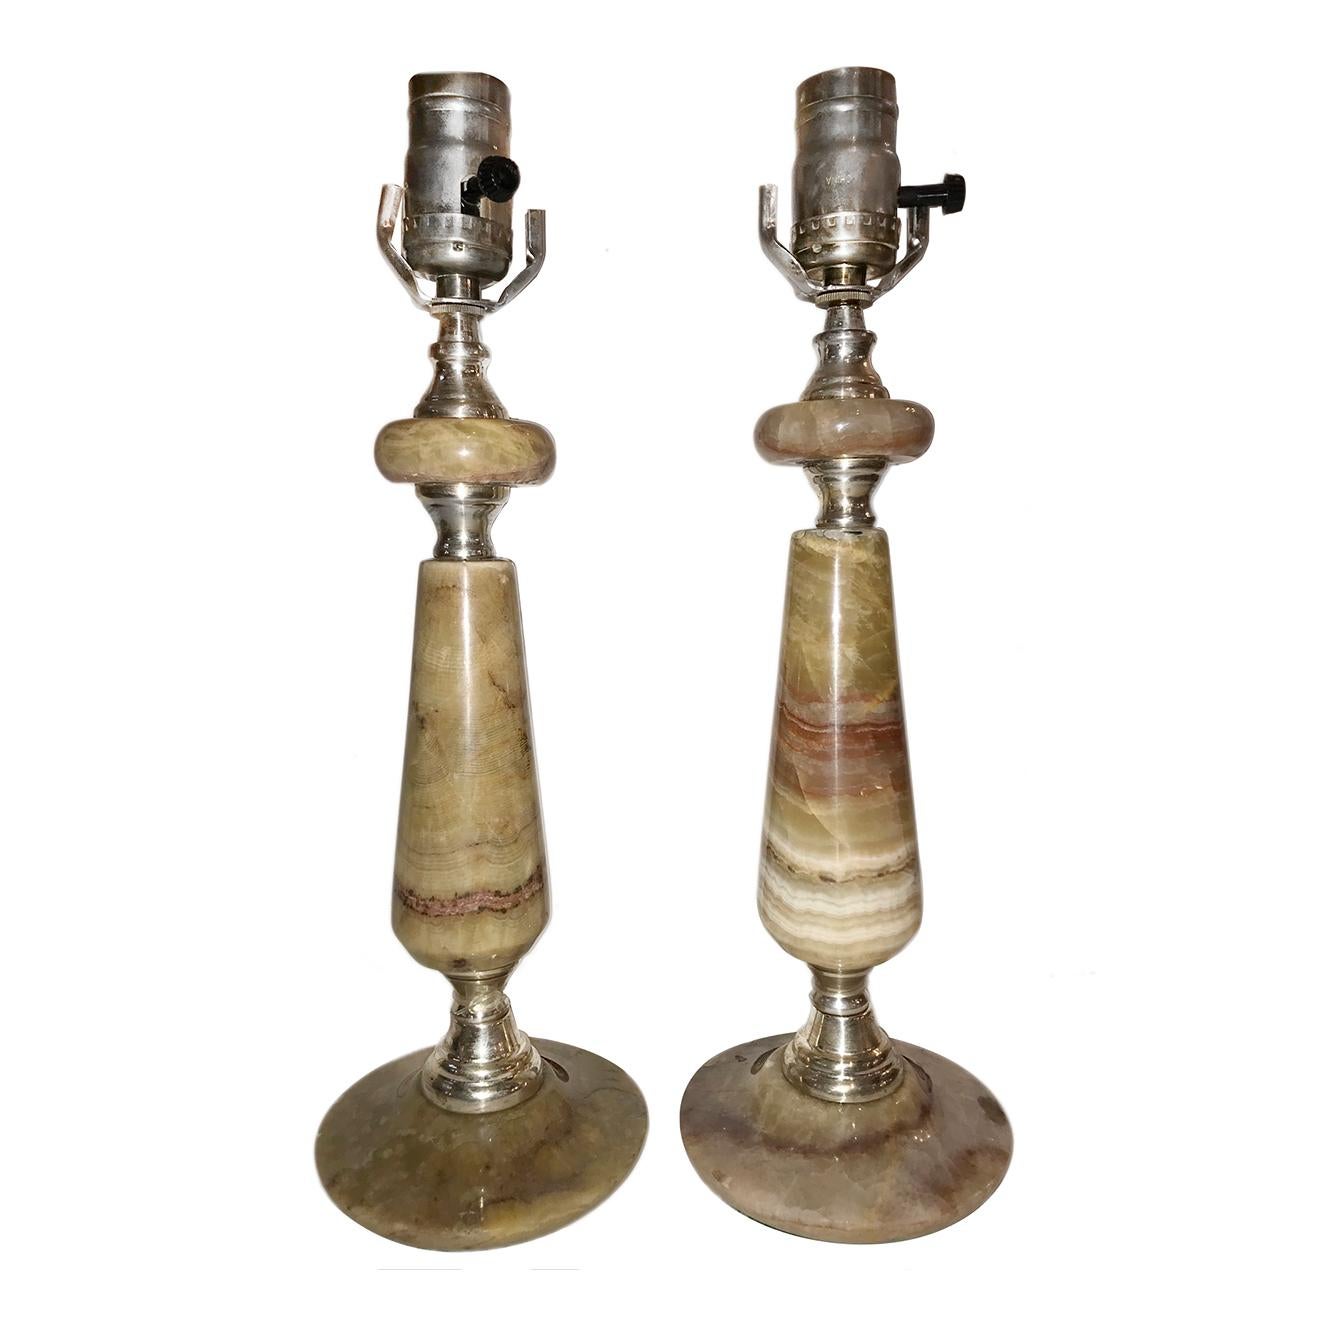 Une paire de lampes de table en onyx rayé, datant des années 1940, avec des ferrures en argent. 

Mesure :
Hauteur du corps 11,5 pouces
Diamètre de la base 4.75